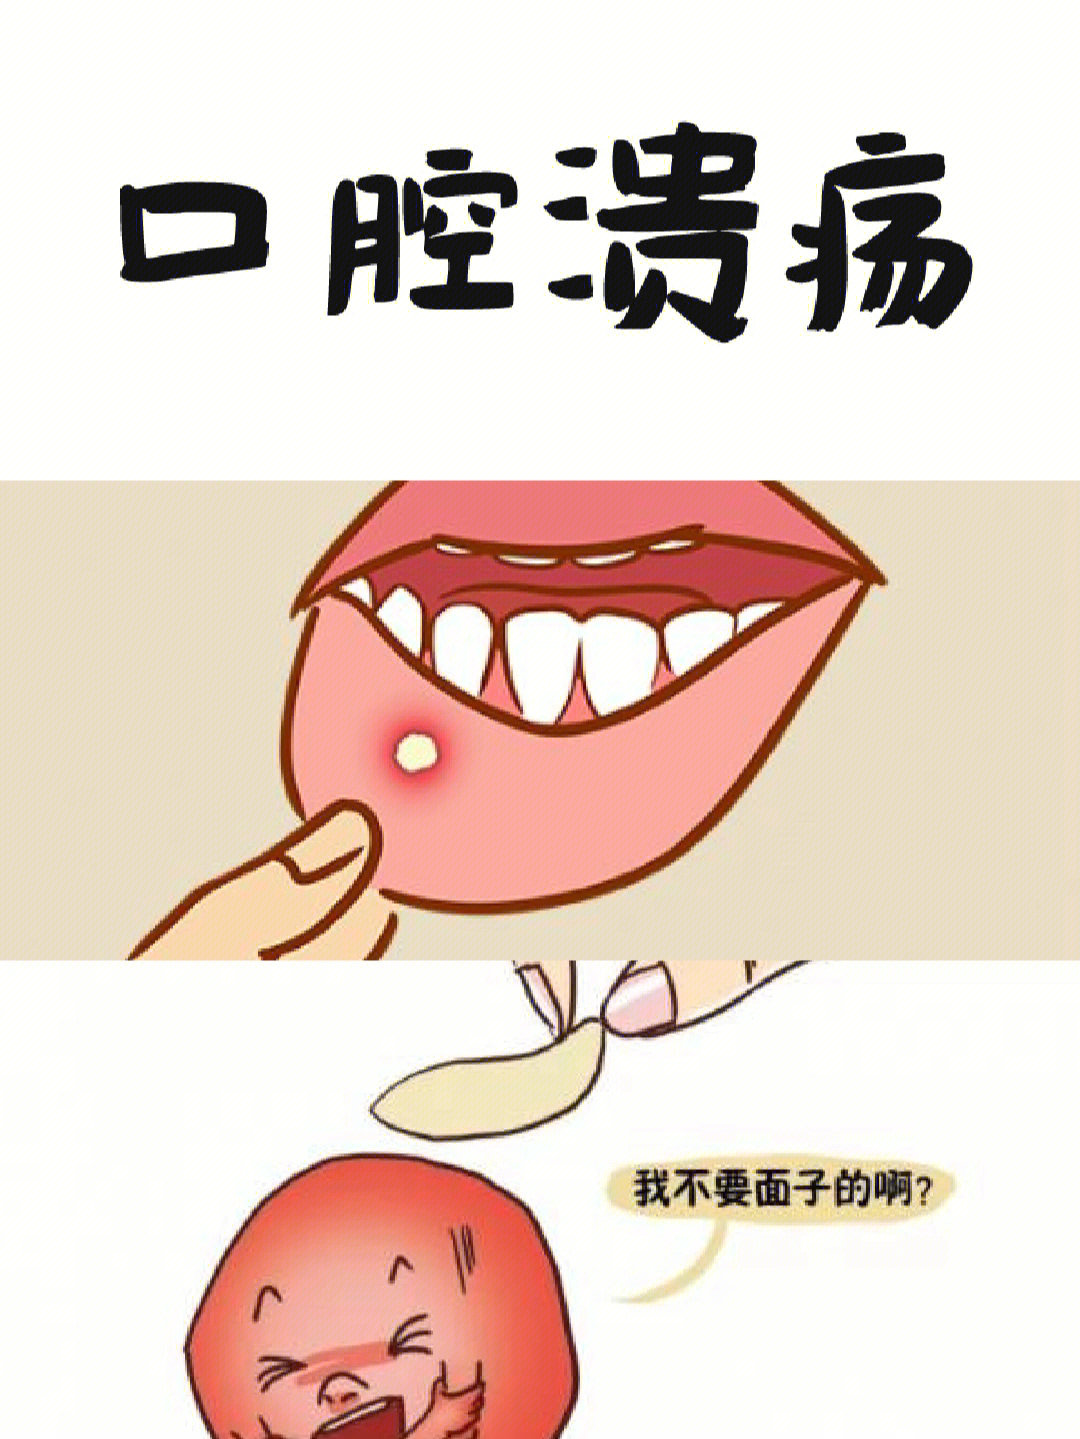 多见于唇内侧,舌头,舌腹,颊黏膜,前庭沟,软腭等部位,舌头溃疡指发生于